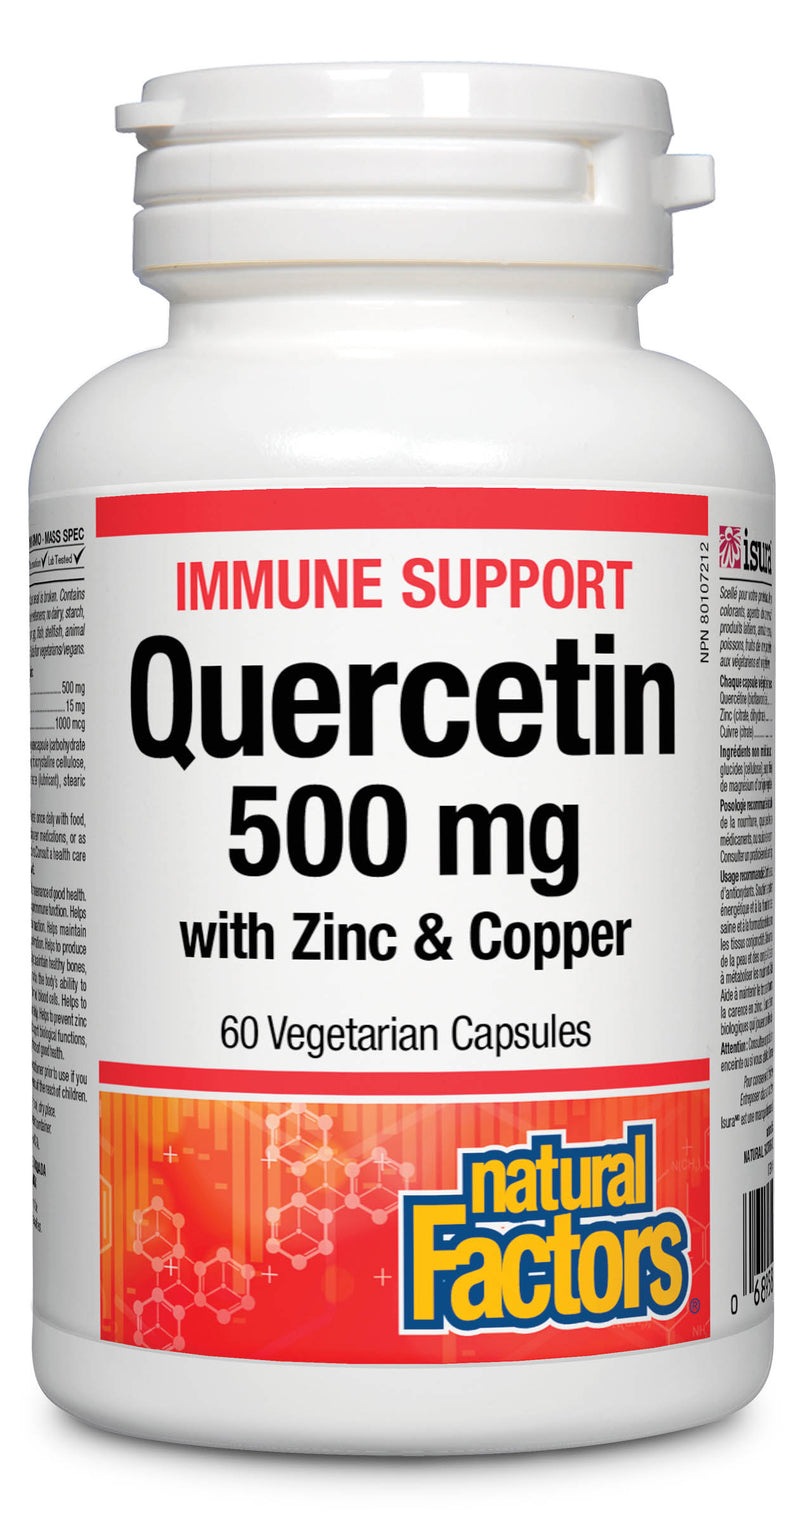 Natural Factors Quercetin with Zinc & Copper 500mg 60 capsules